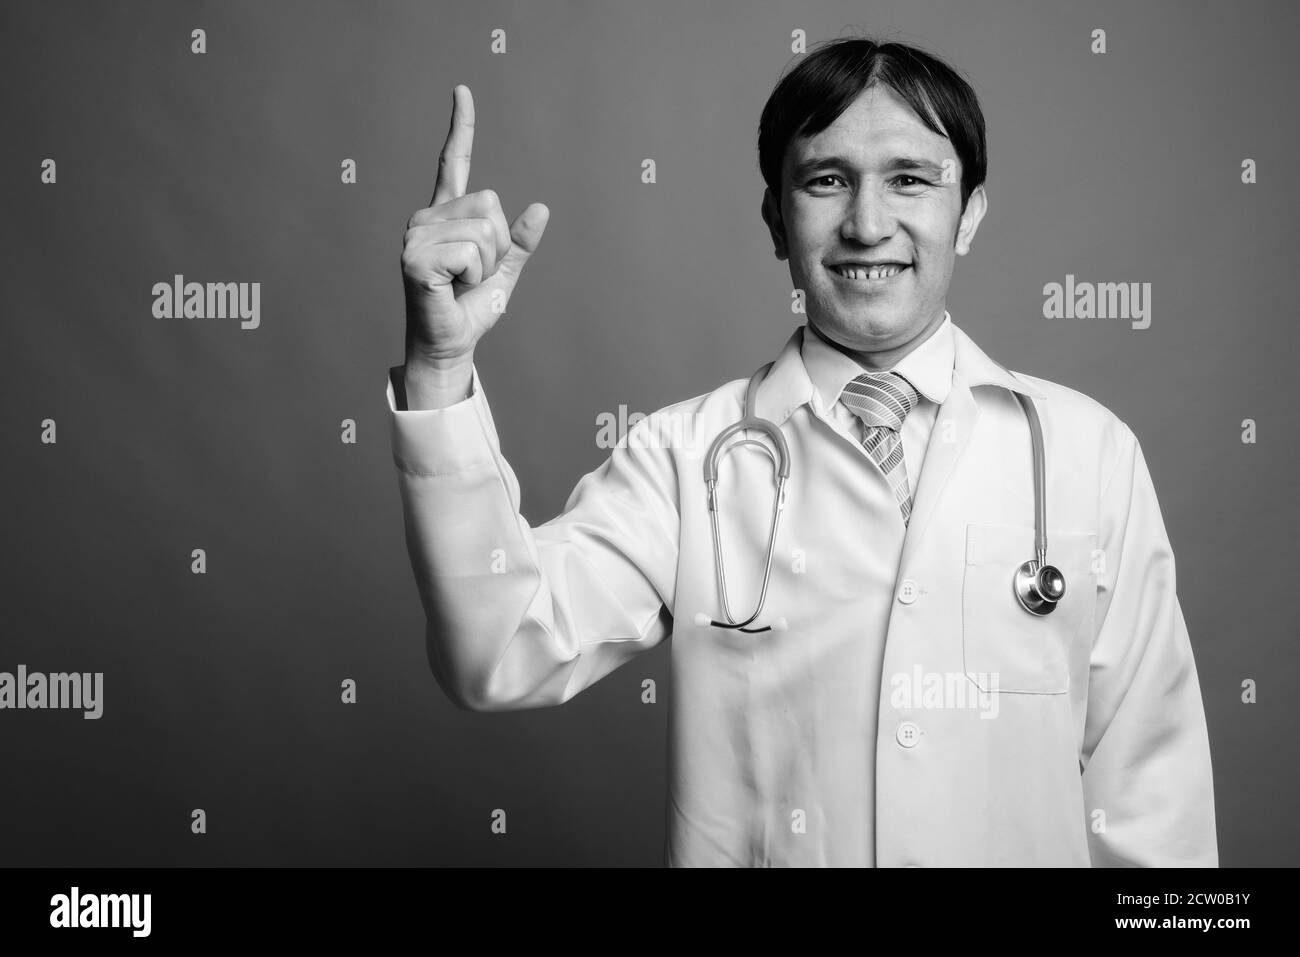 Young Asian man médecin contre l'arrière-plan gris Banque D'Images